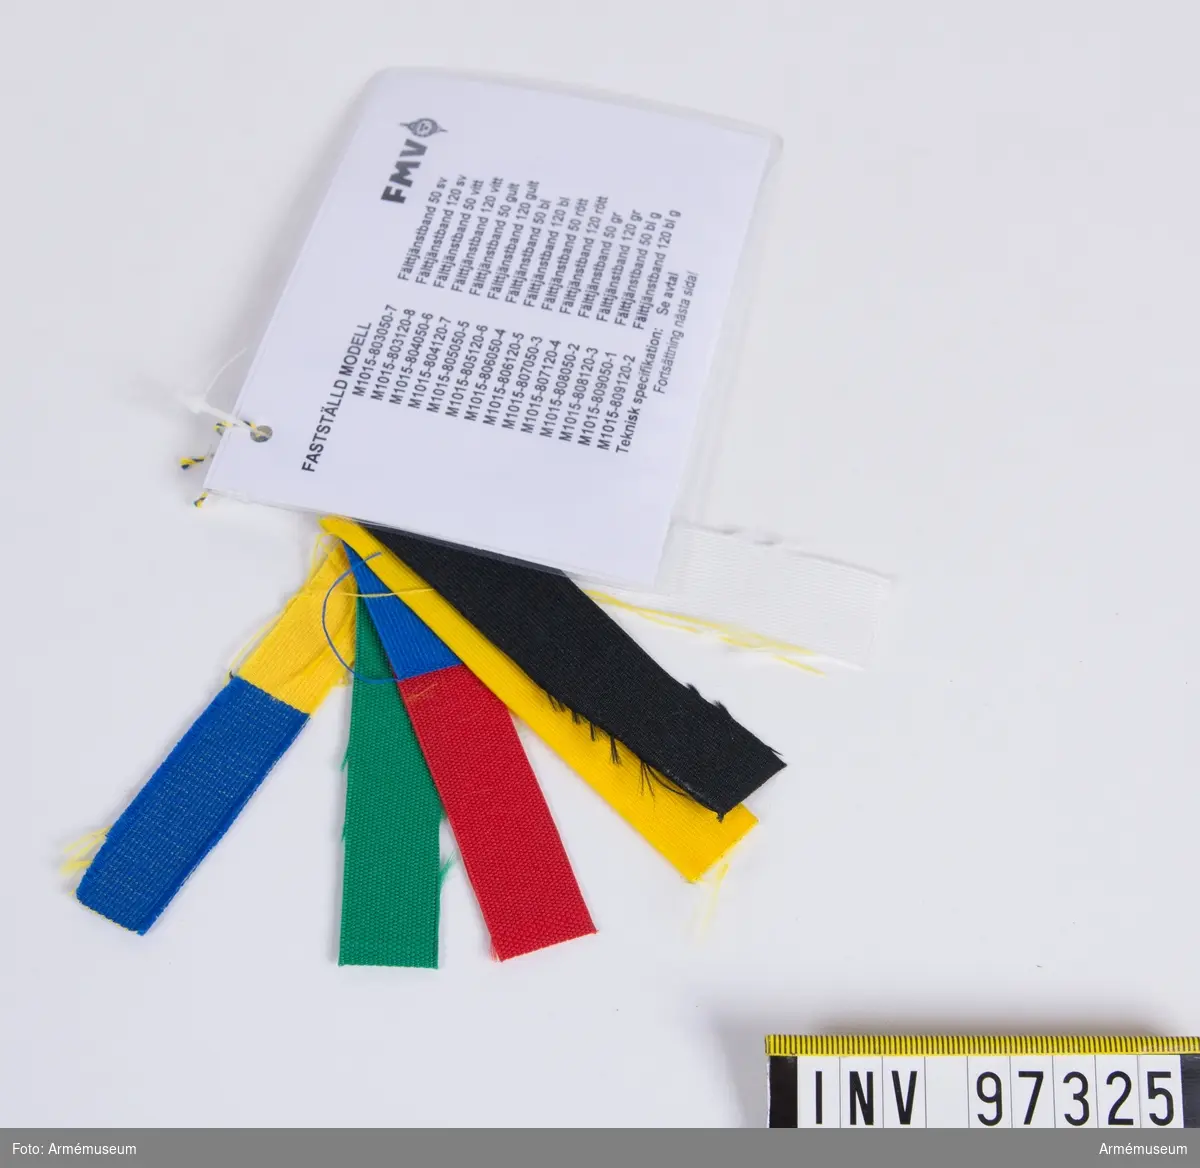 Knippe med prov på band i olika färger. Varje färg har eget M-nummer. På den vidhängande modellappen anges alla M-nummer samt att teknisk bestämmelse finns i avtalet. Lappen är underskriven 1999-01-14 av Hans Norlén och Roger Strömstedt.